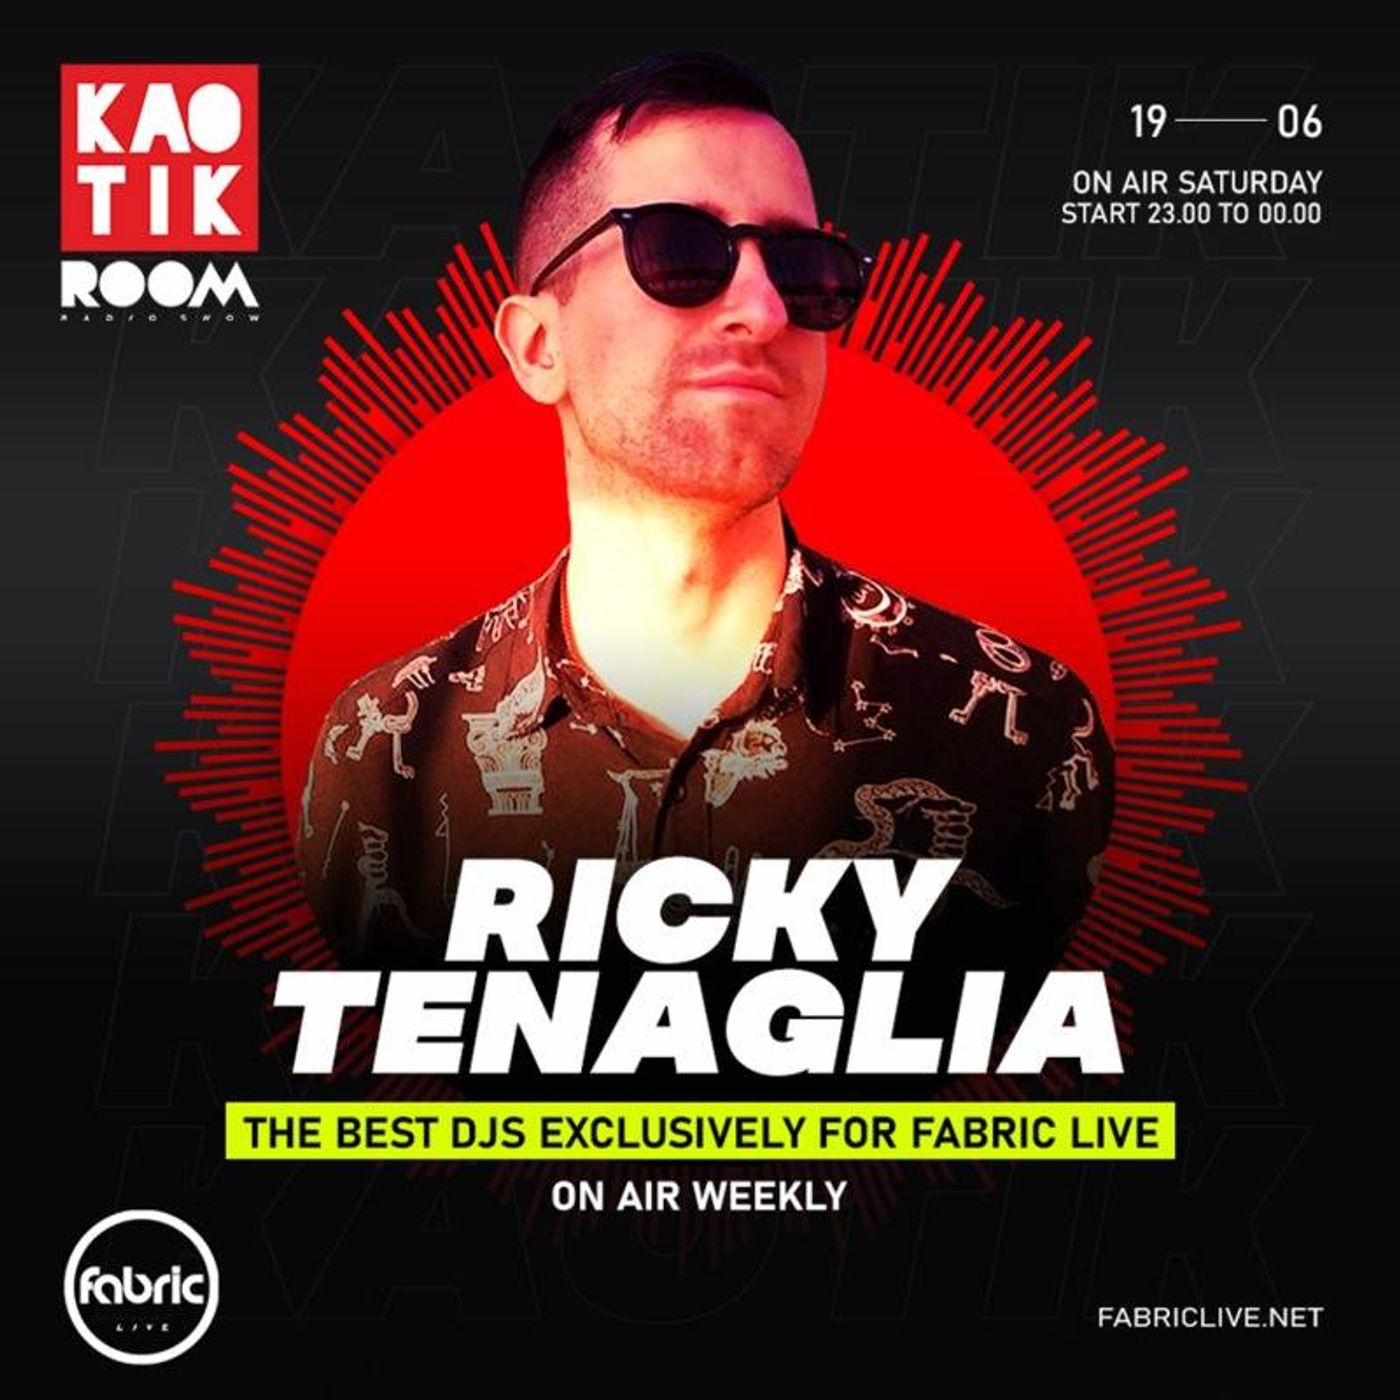 RICKY TENAGLIA - KAOTIK ROOM EP. 010